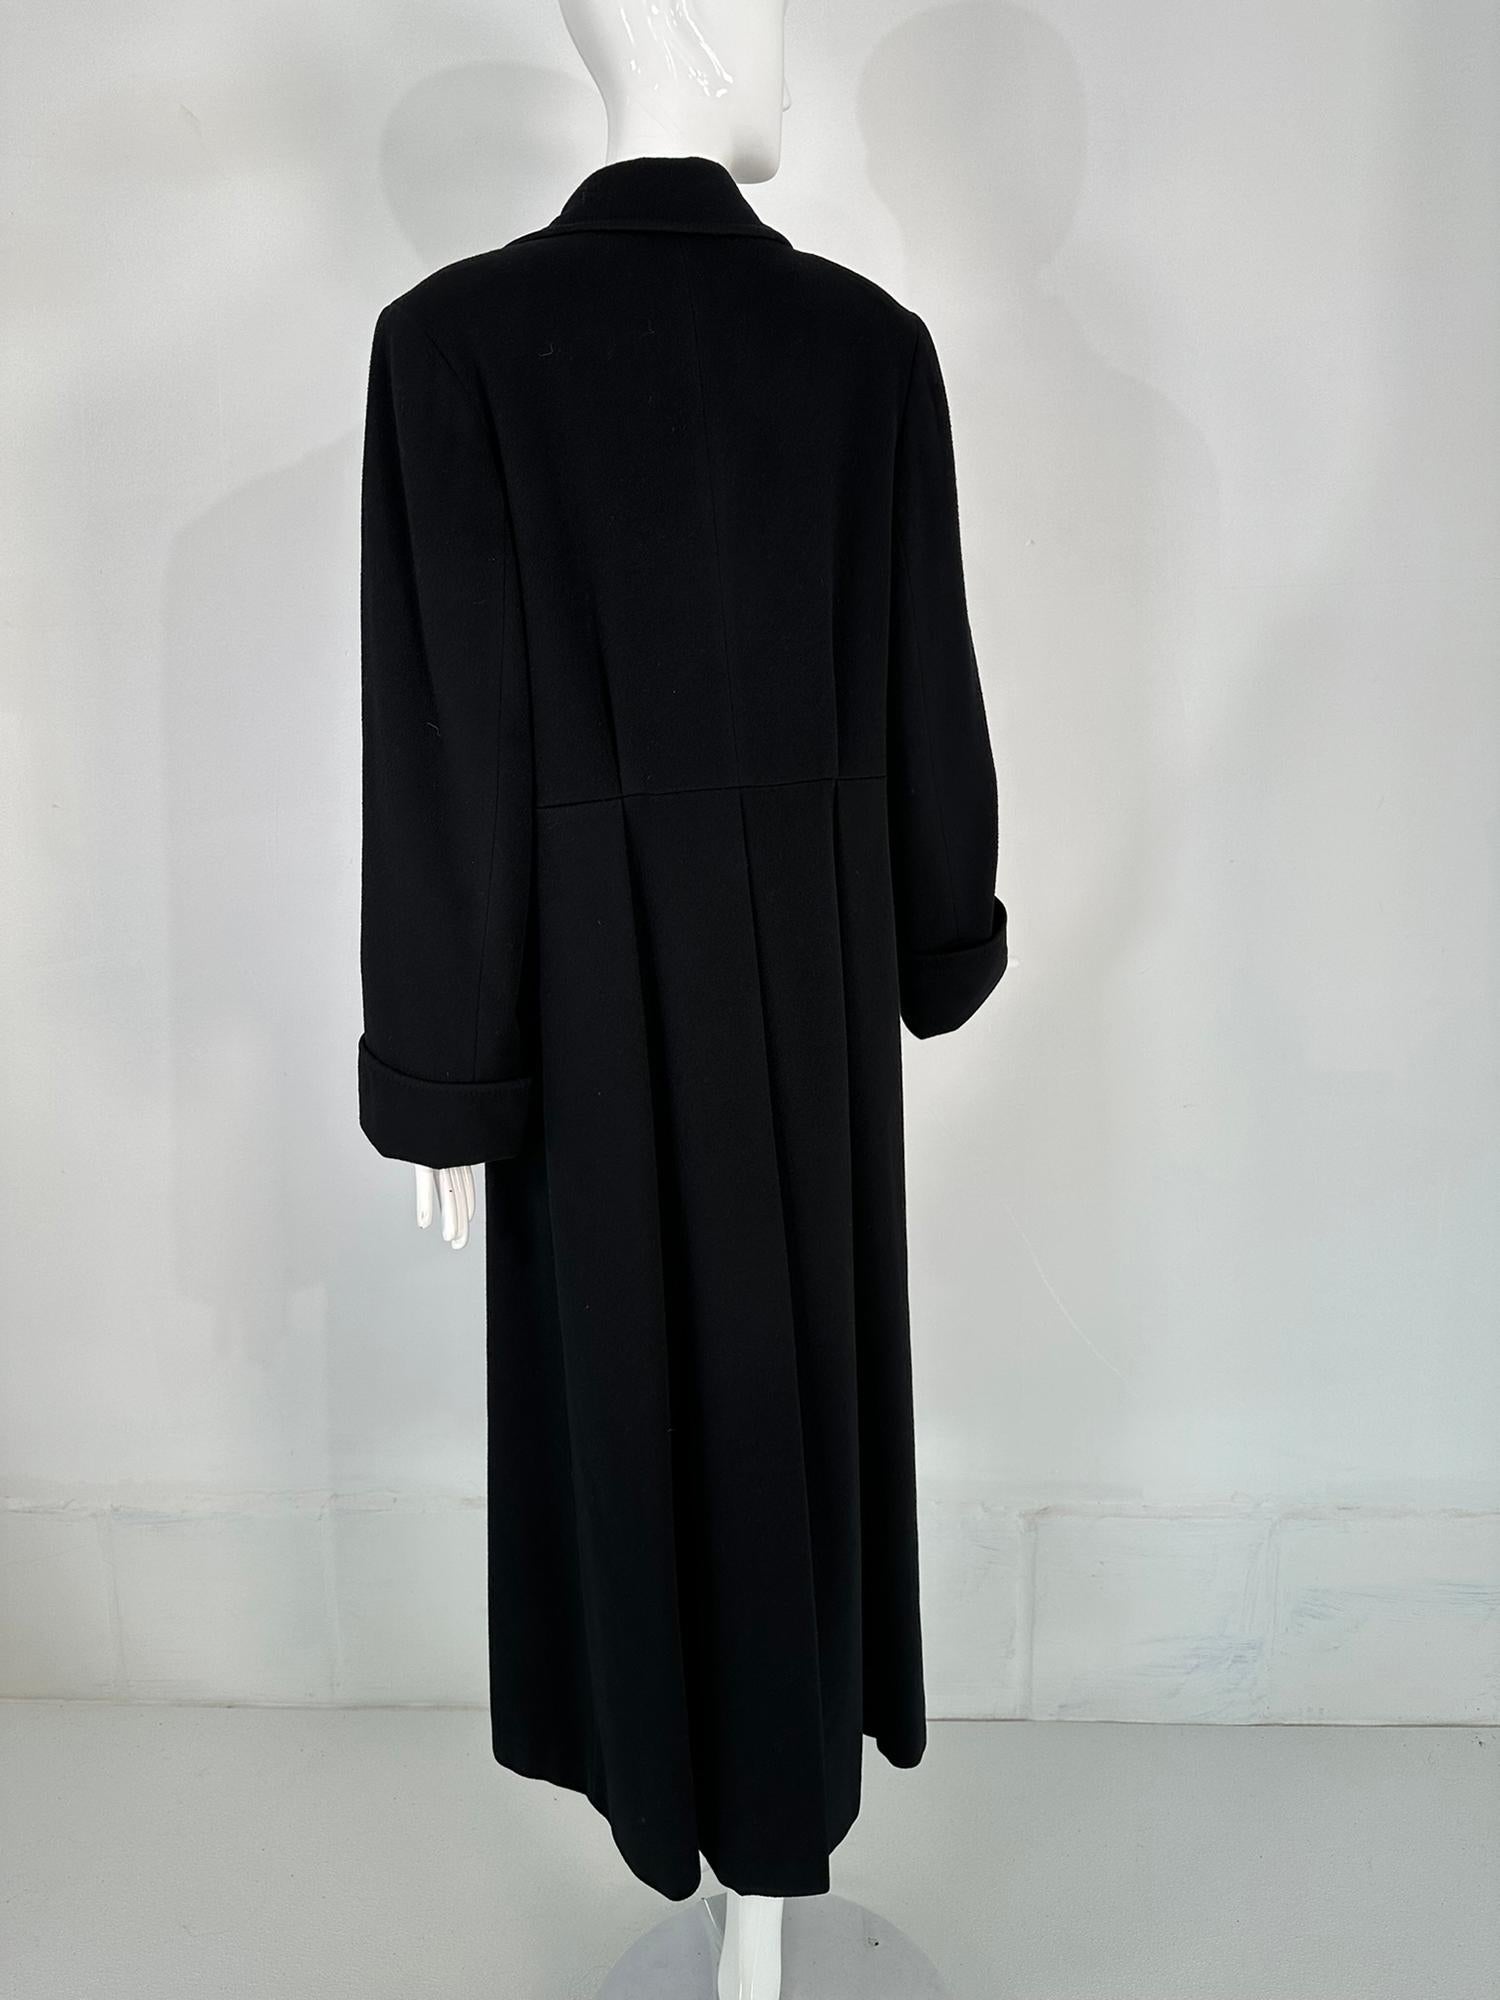 Bergdorf Goodman Black Cashmere Over Coat Deep Center Hem Vent  For Sale 4